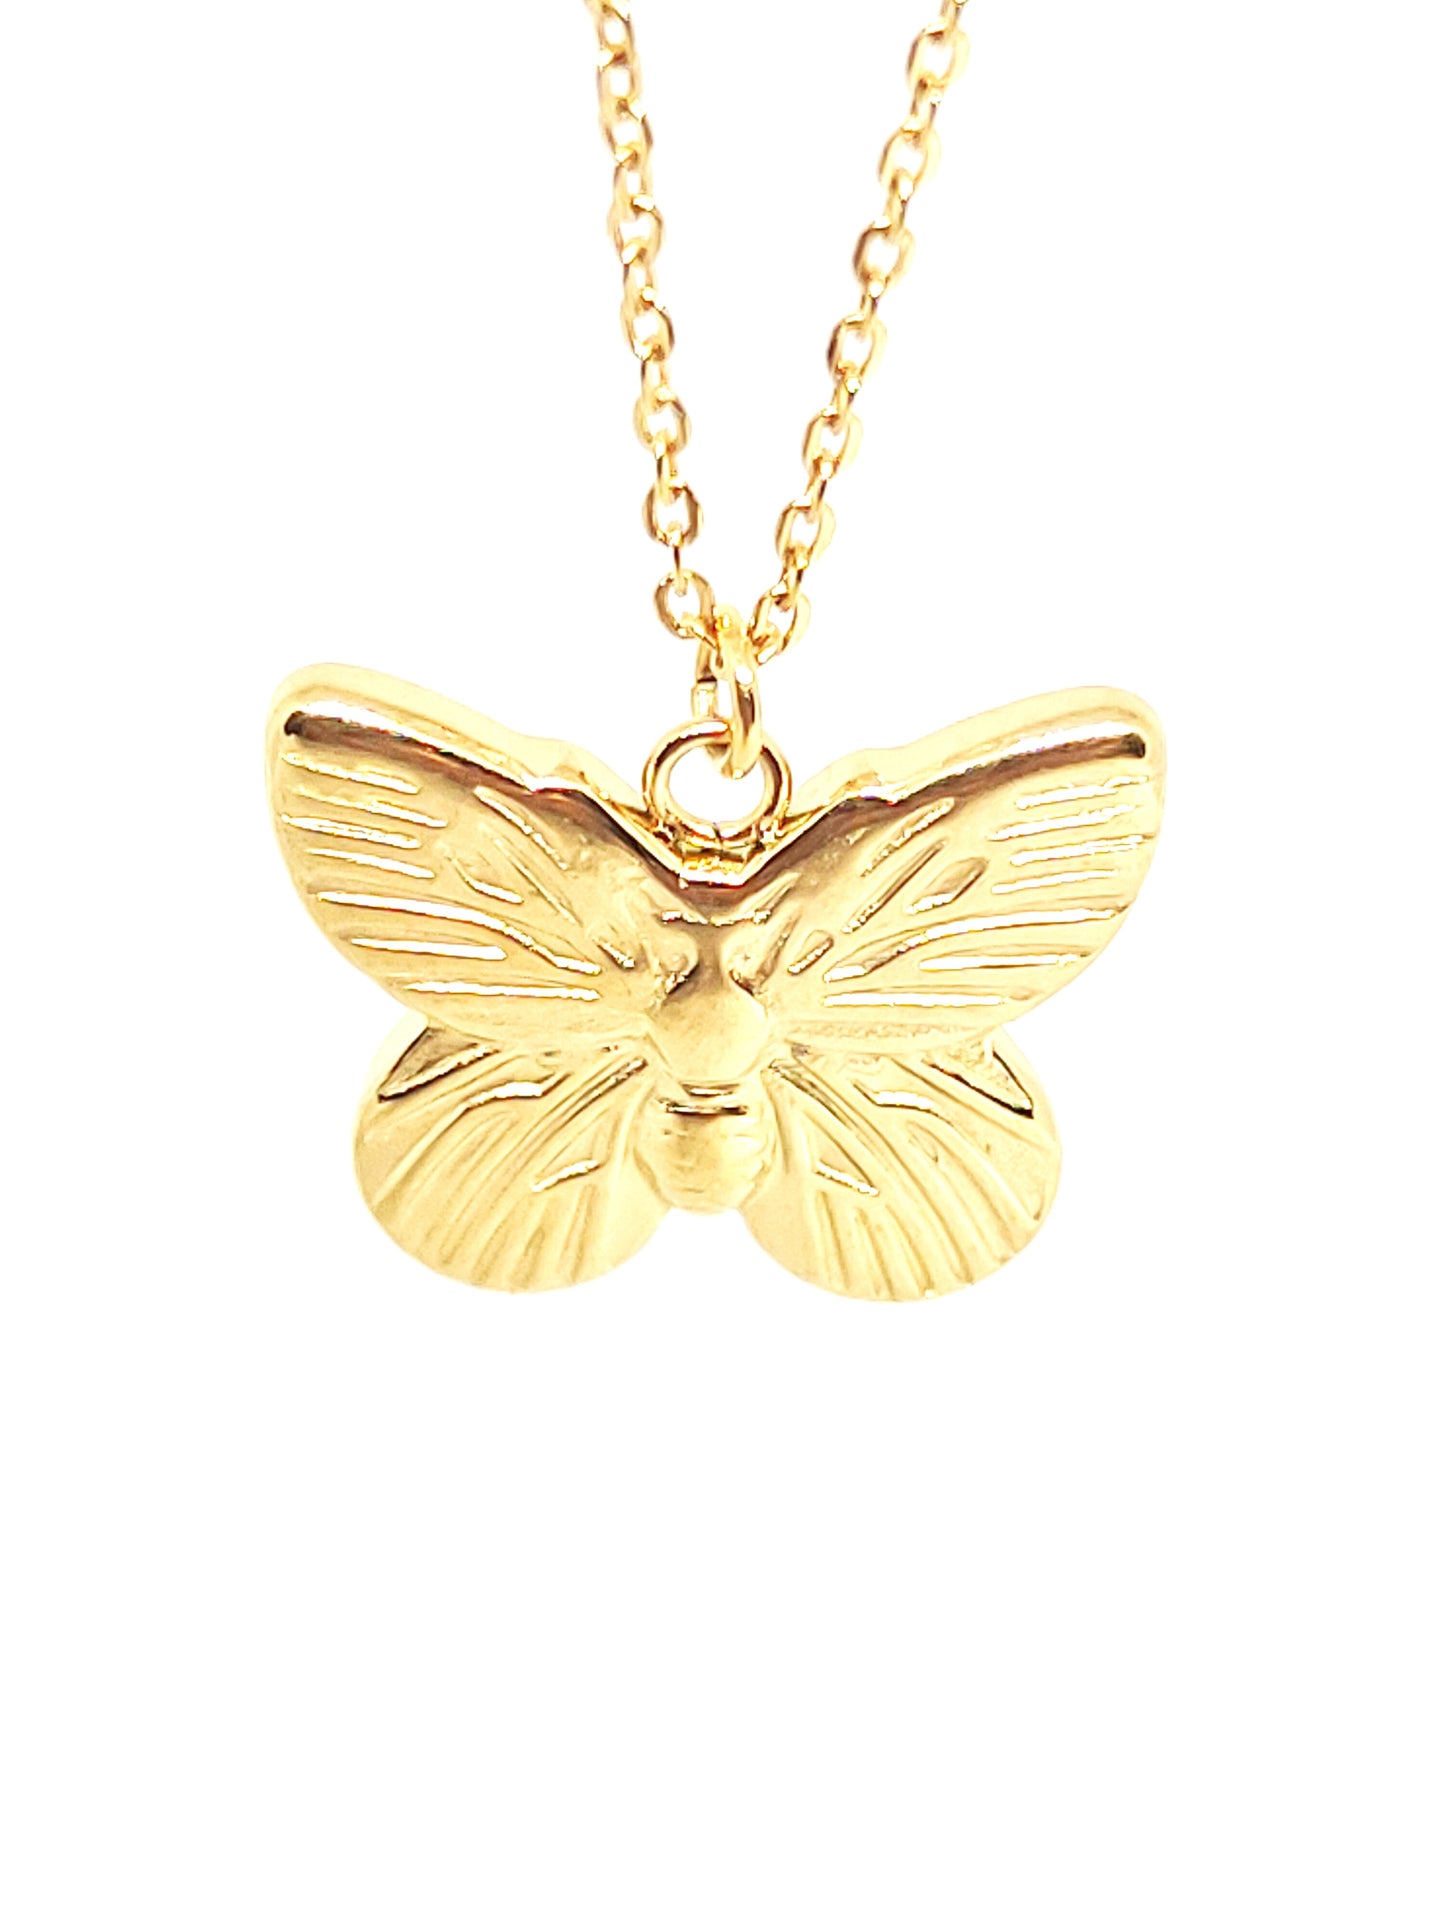  mariposa del collar dorado con cadena